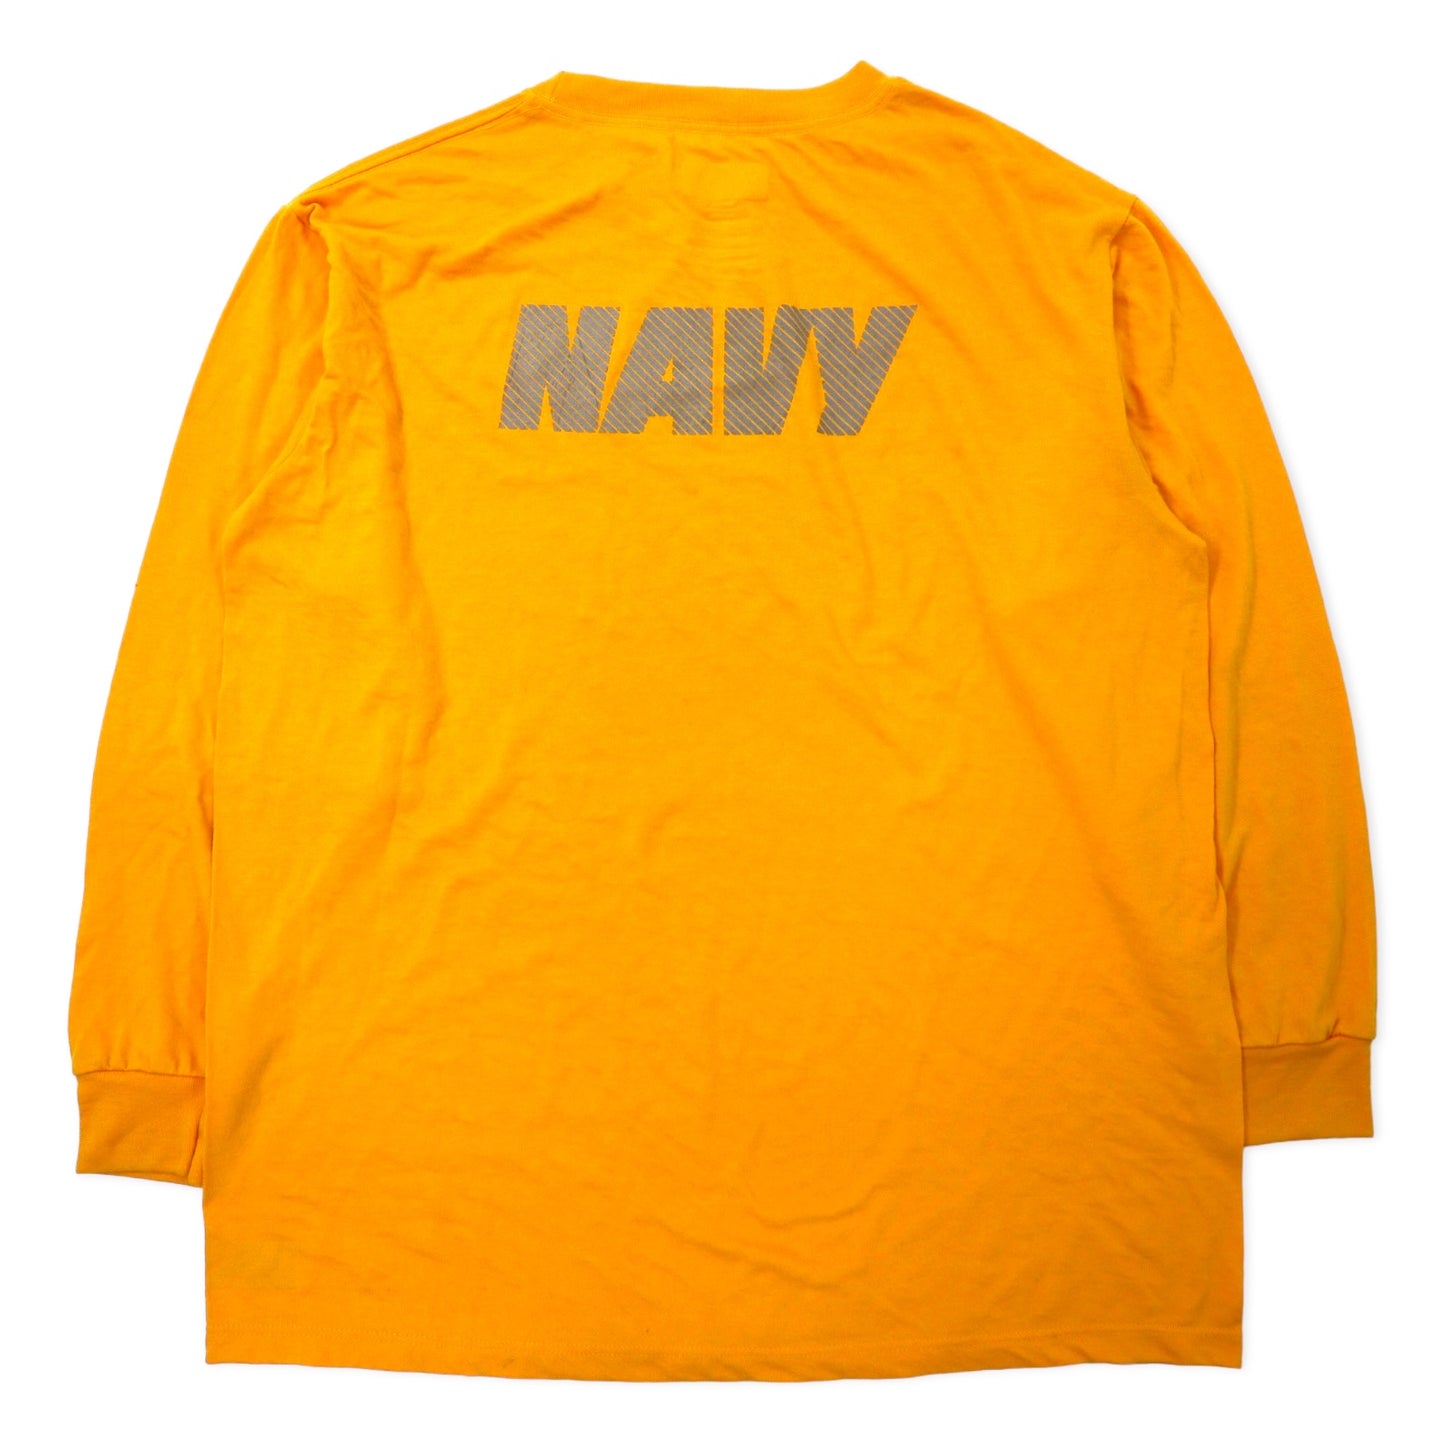 US NAVY 米軍 トレーニング Tシャツ ロンT L イエロー ポリエステル リフレクター ミリタリー M.J.SOFFE